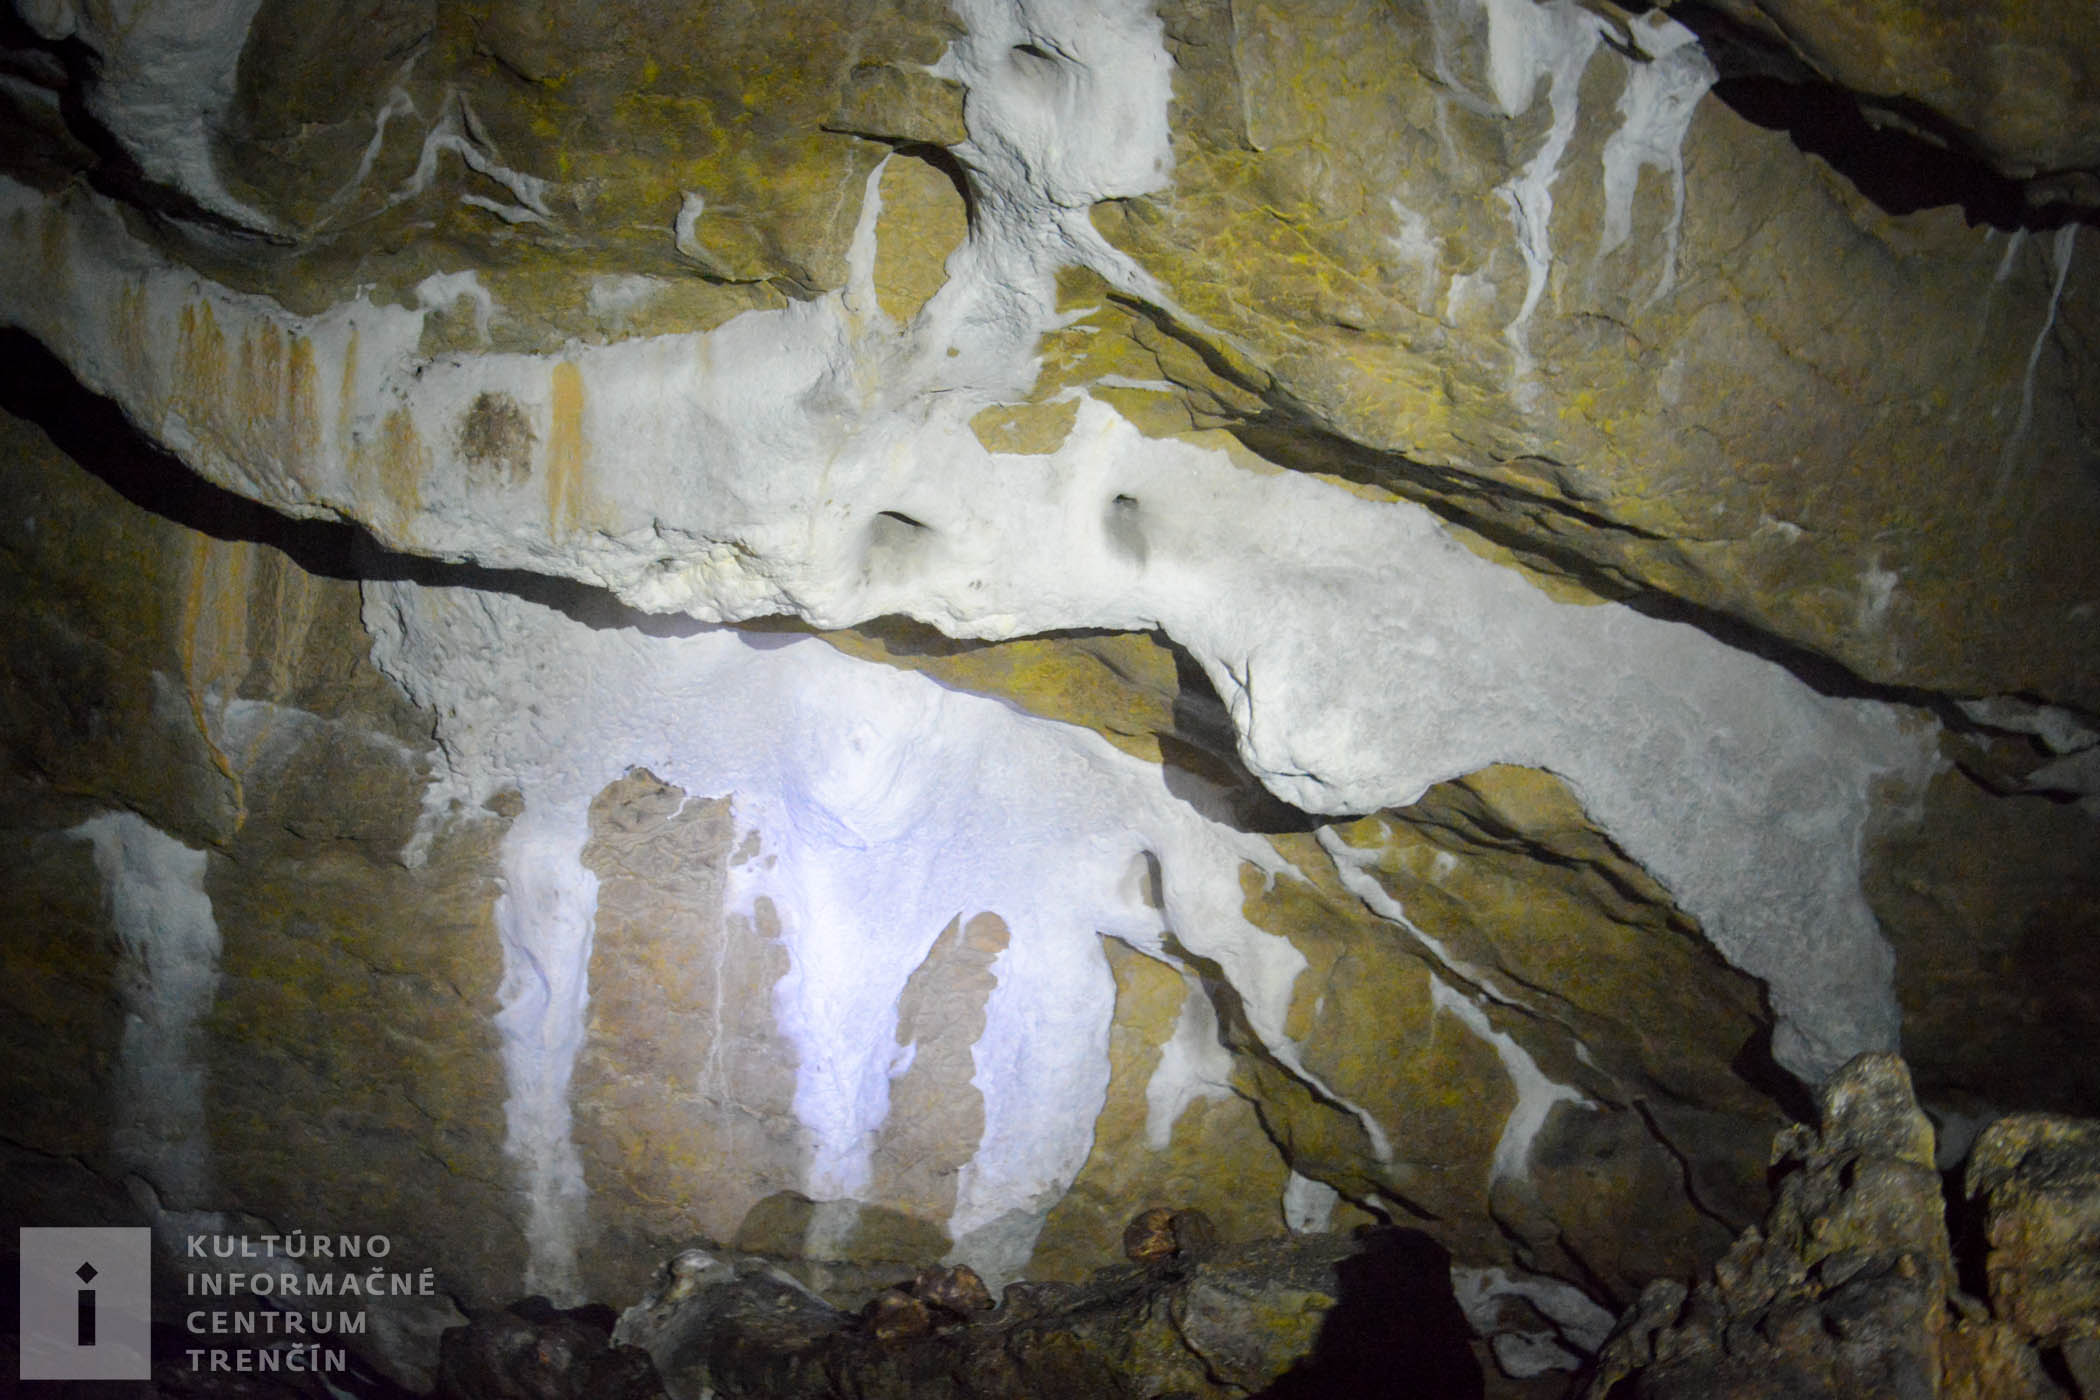 Výzdoba jaskyne z mäkkého sintra (jaskynného tvarohu).